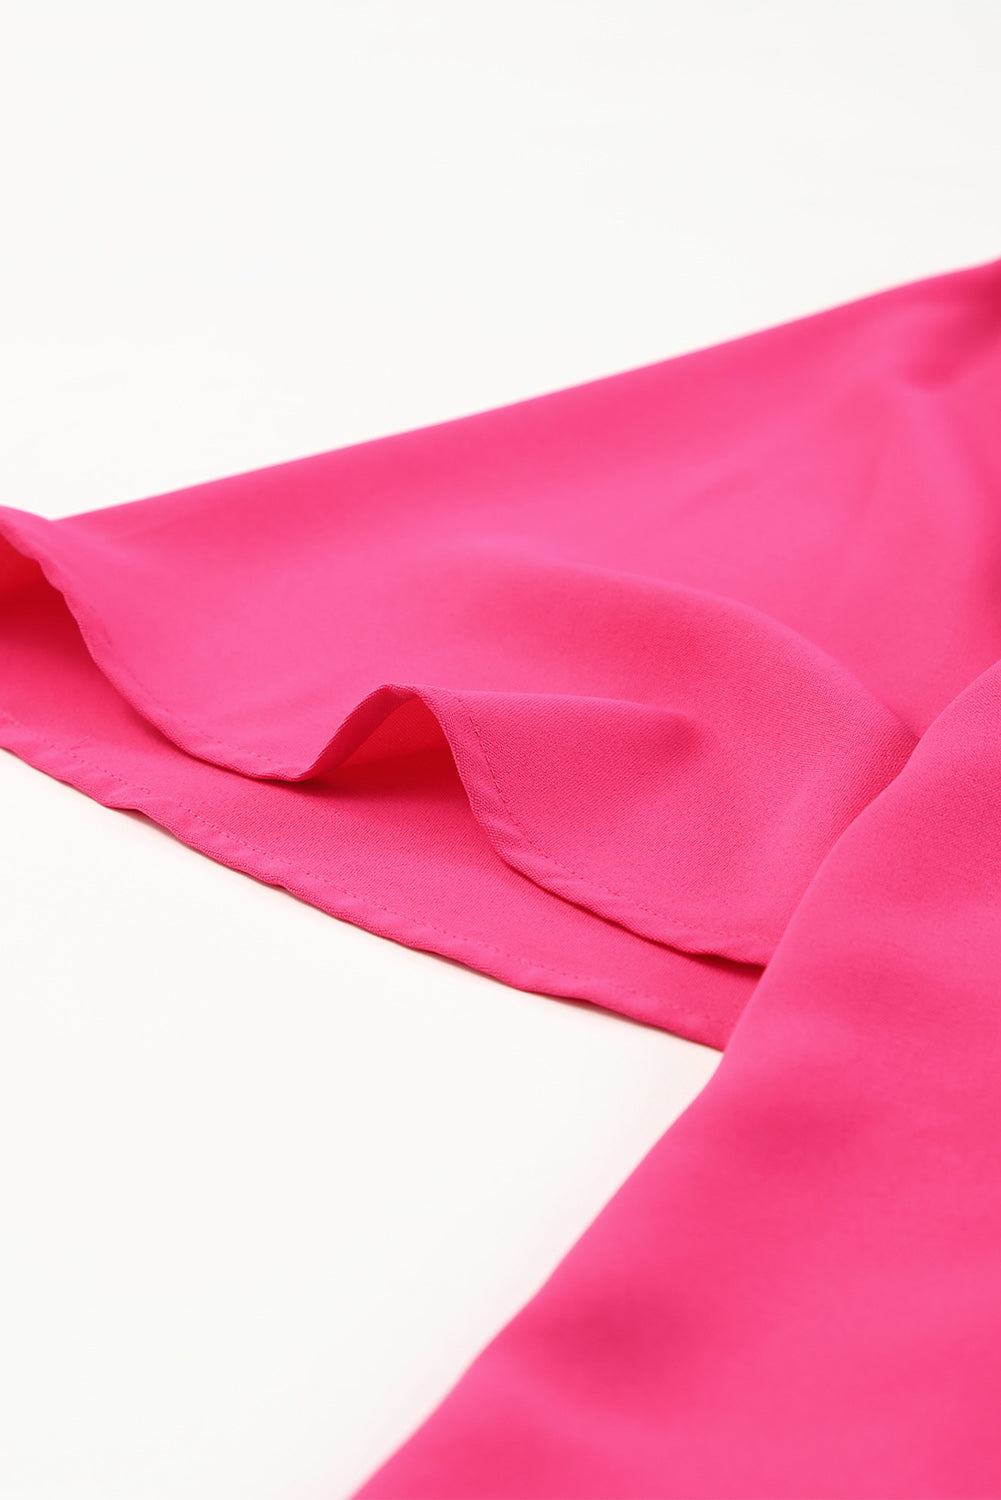 Pale Violet Red V-Neck Cloak Sleeve Blouse Clothing